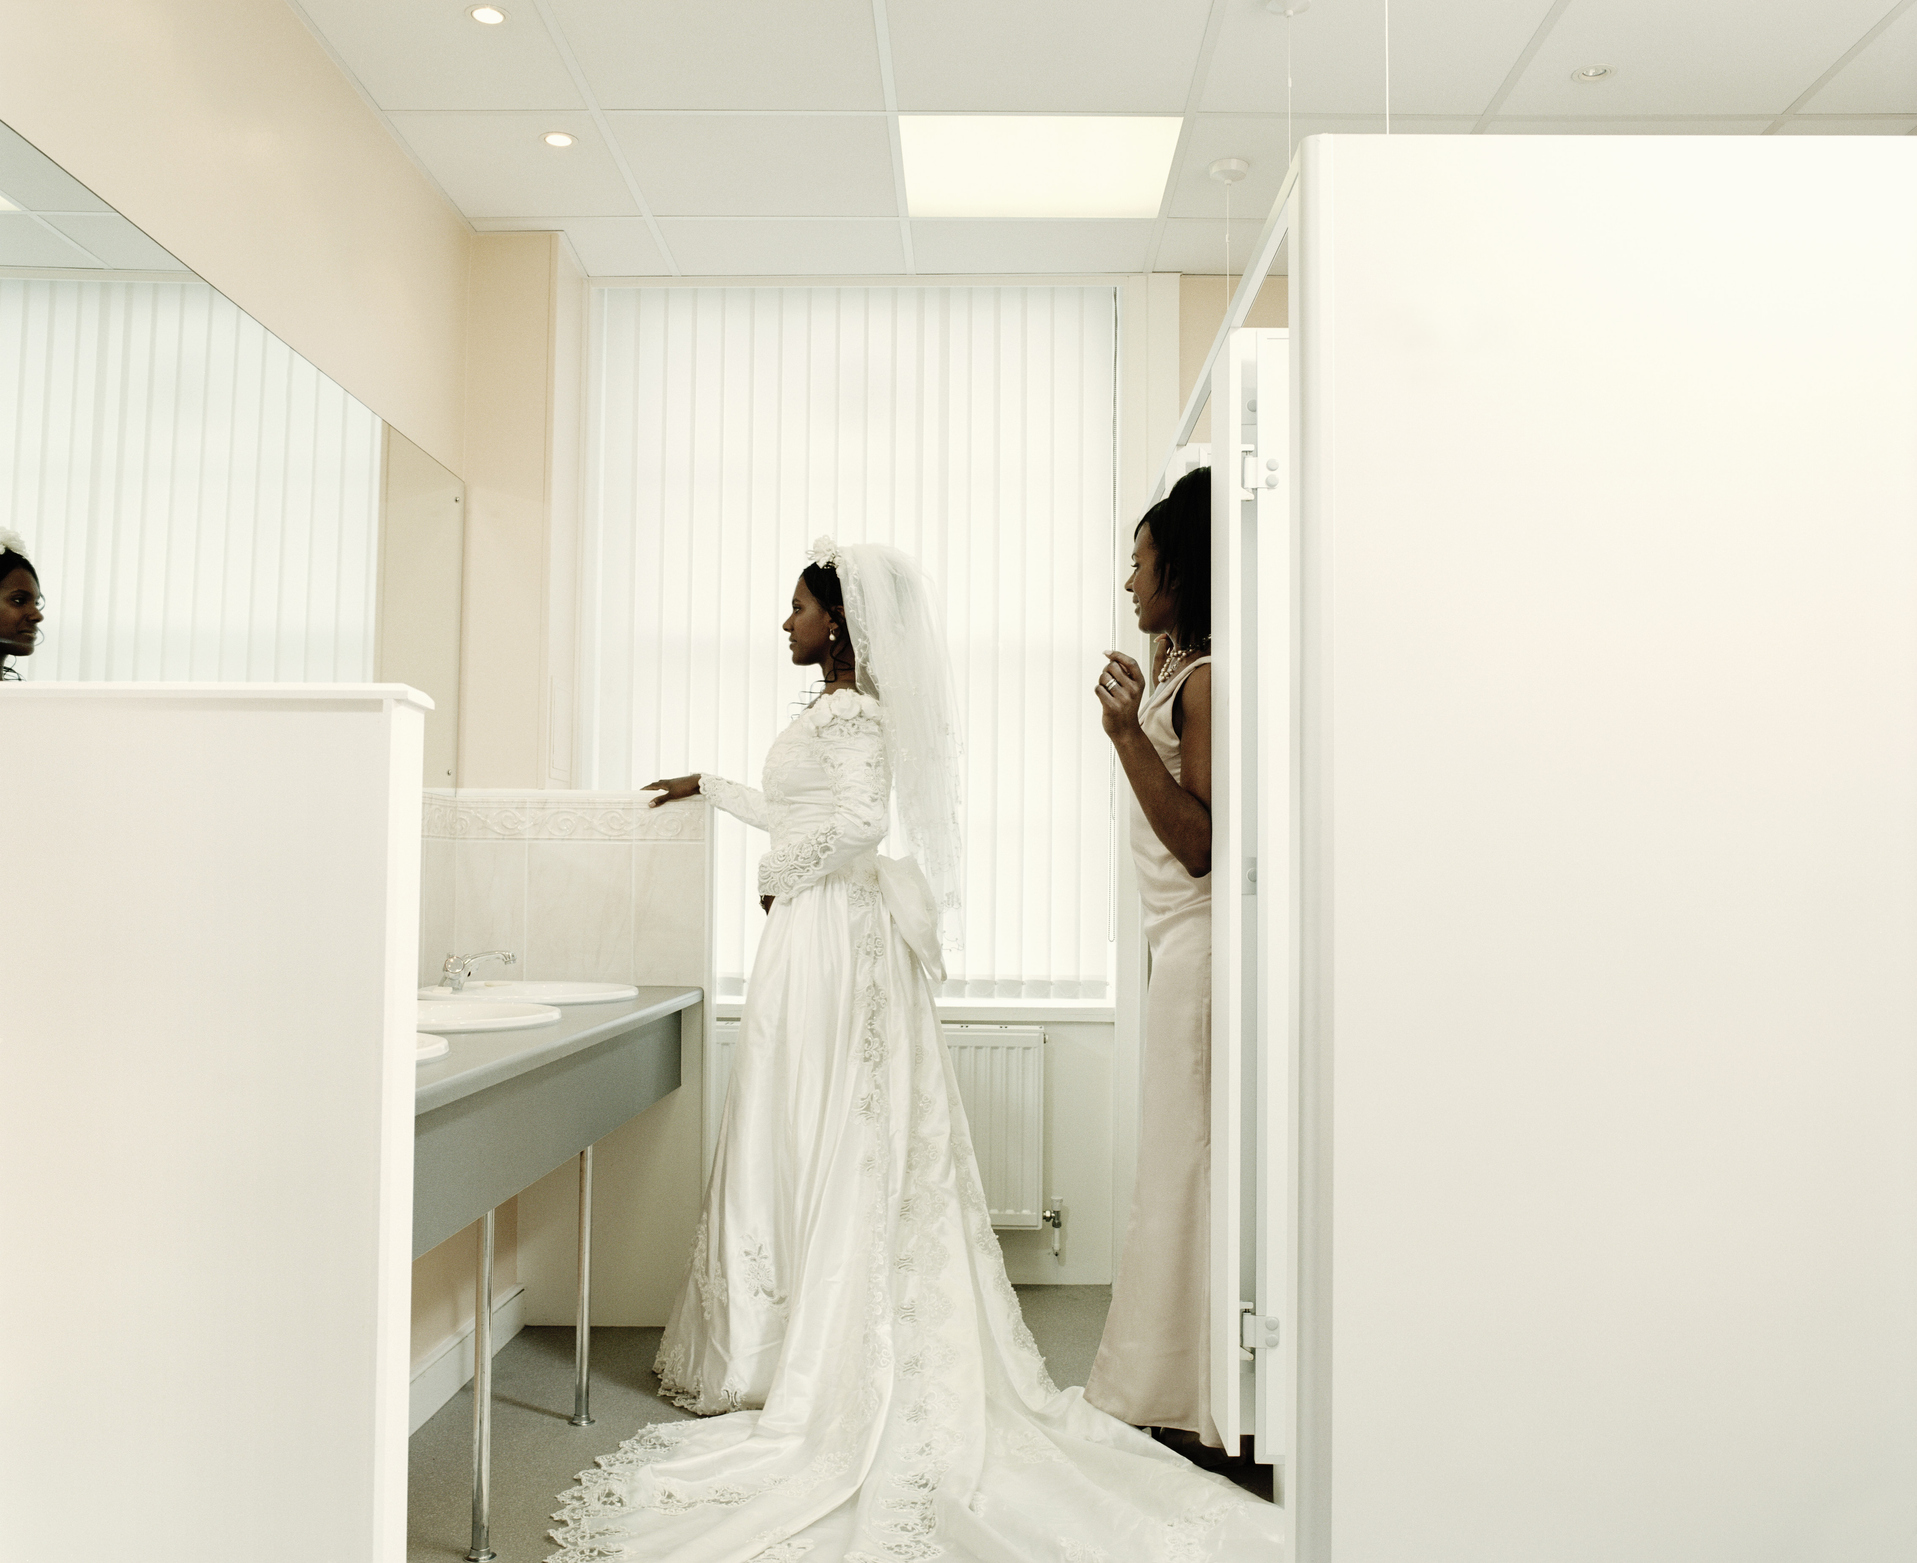 Bride and bridesmaid facing mirror in bathroom